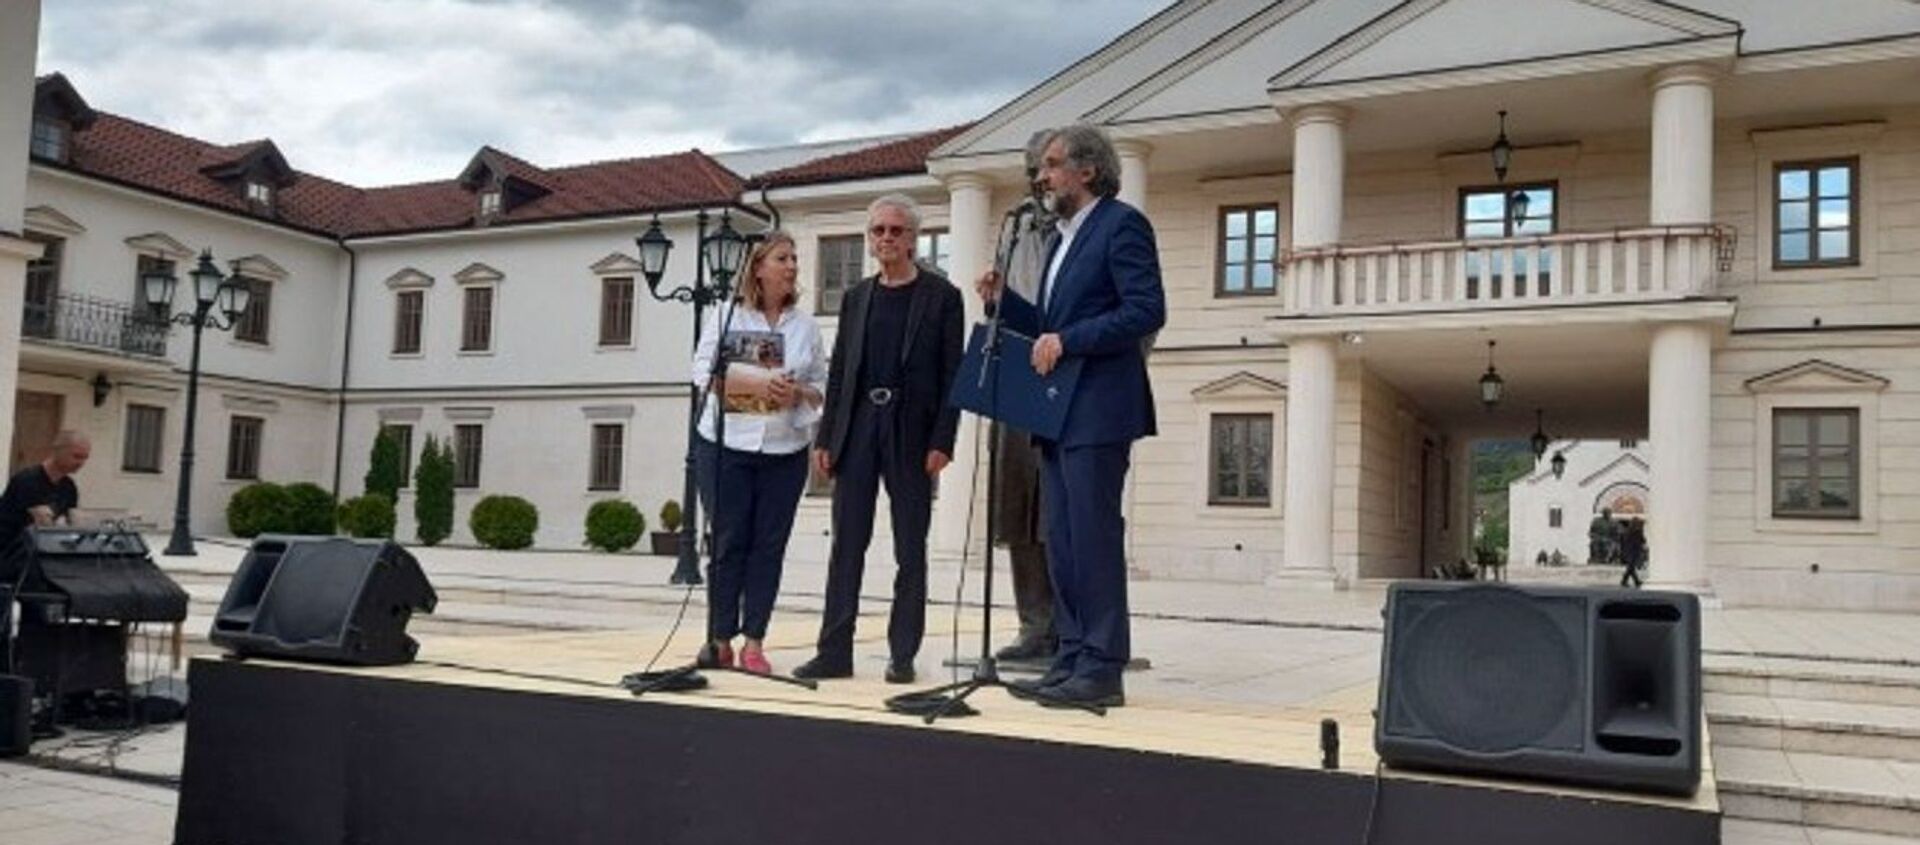 Emir Kusturica uručuje Peteru Handkeu Veliku nagradu Ivo Andrić u Andrićgradu - Sputnik Srbija, 1920, 07.05.2021